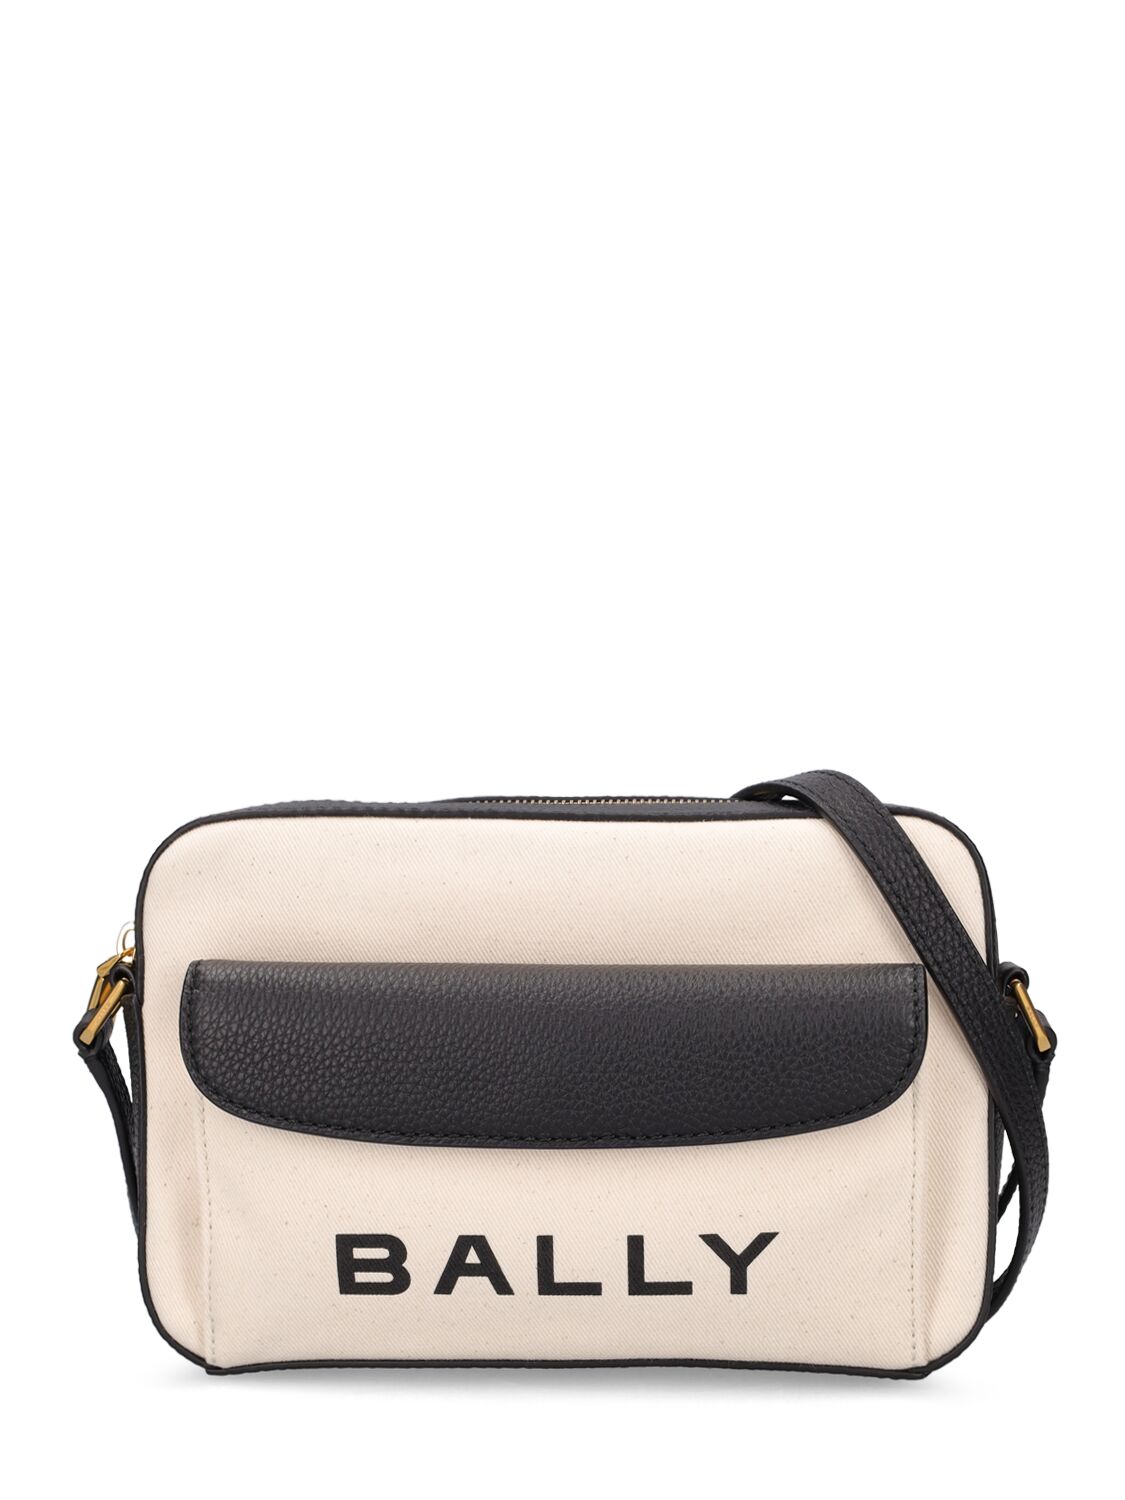 Bally Bar Daniel Leather Shoulder Bag In Natural,blk